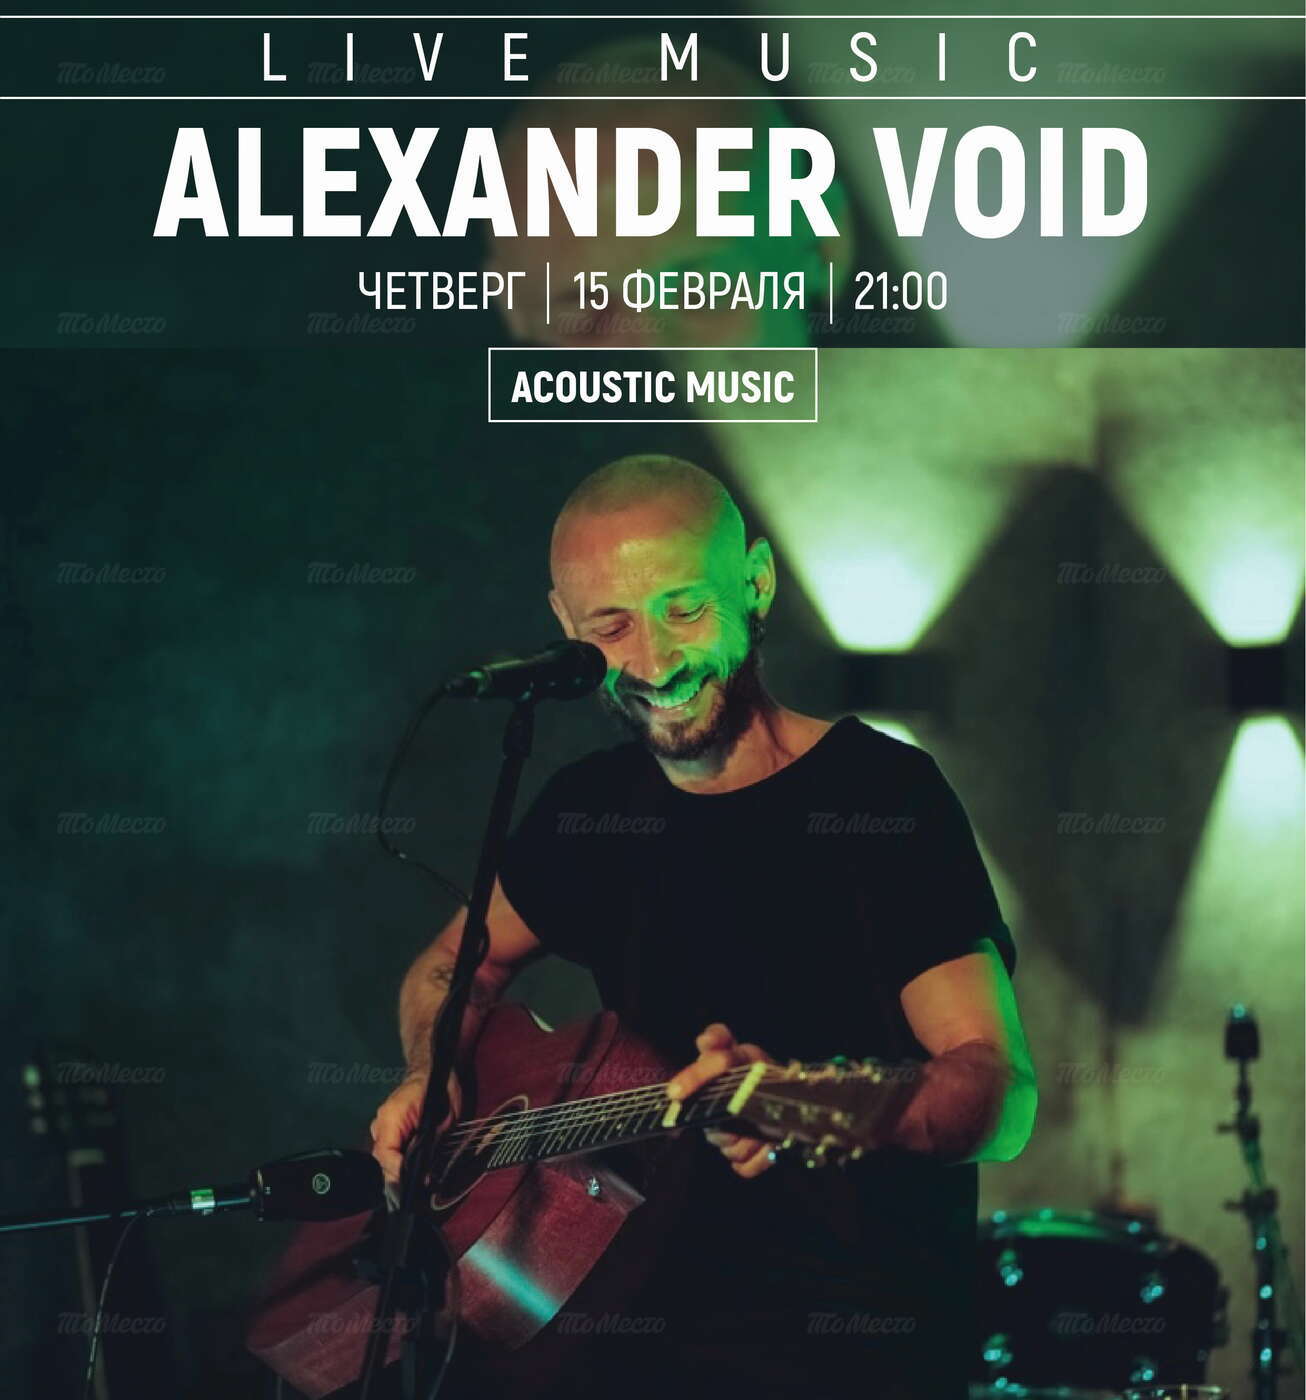 Alexander Void